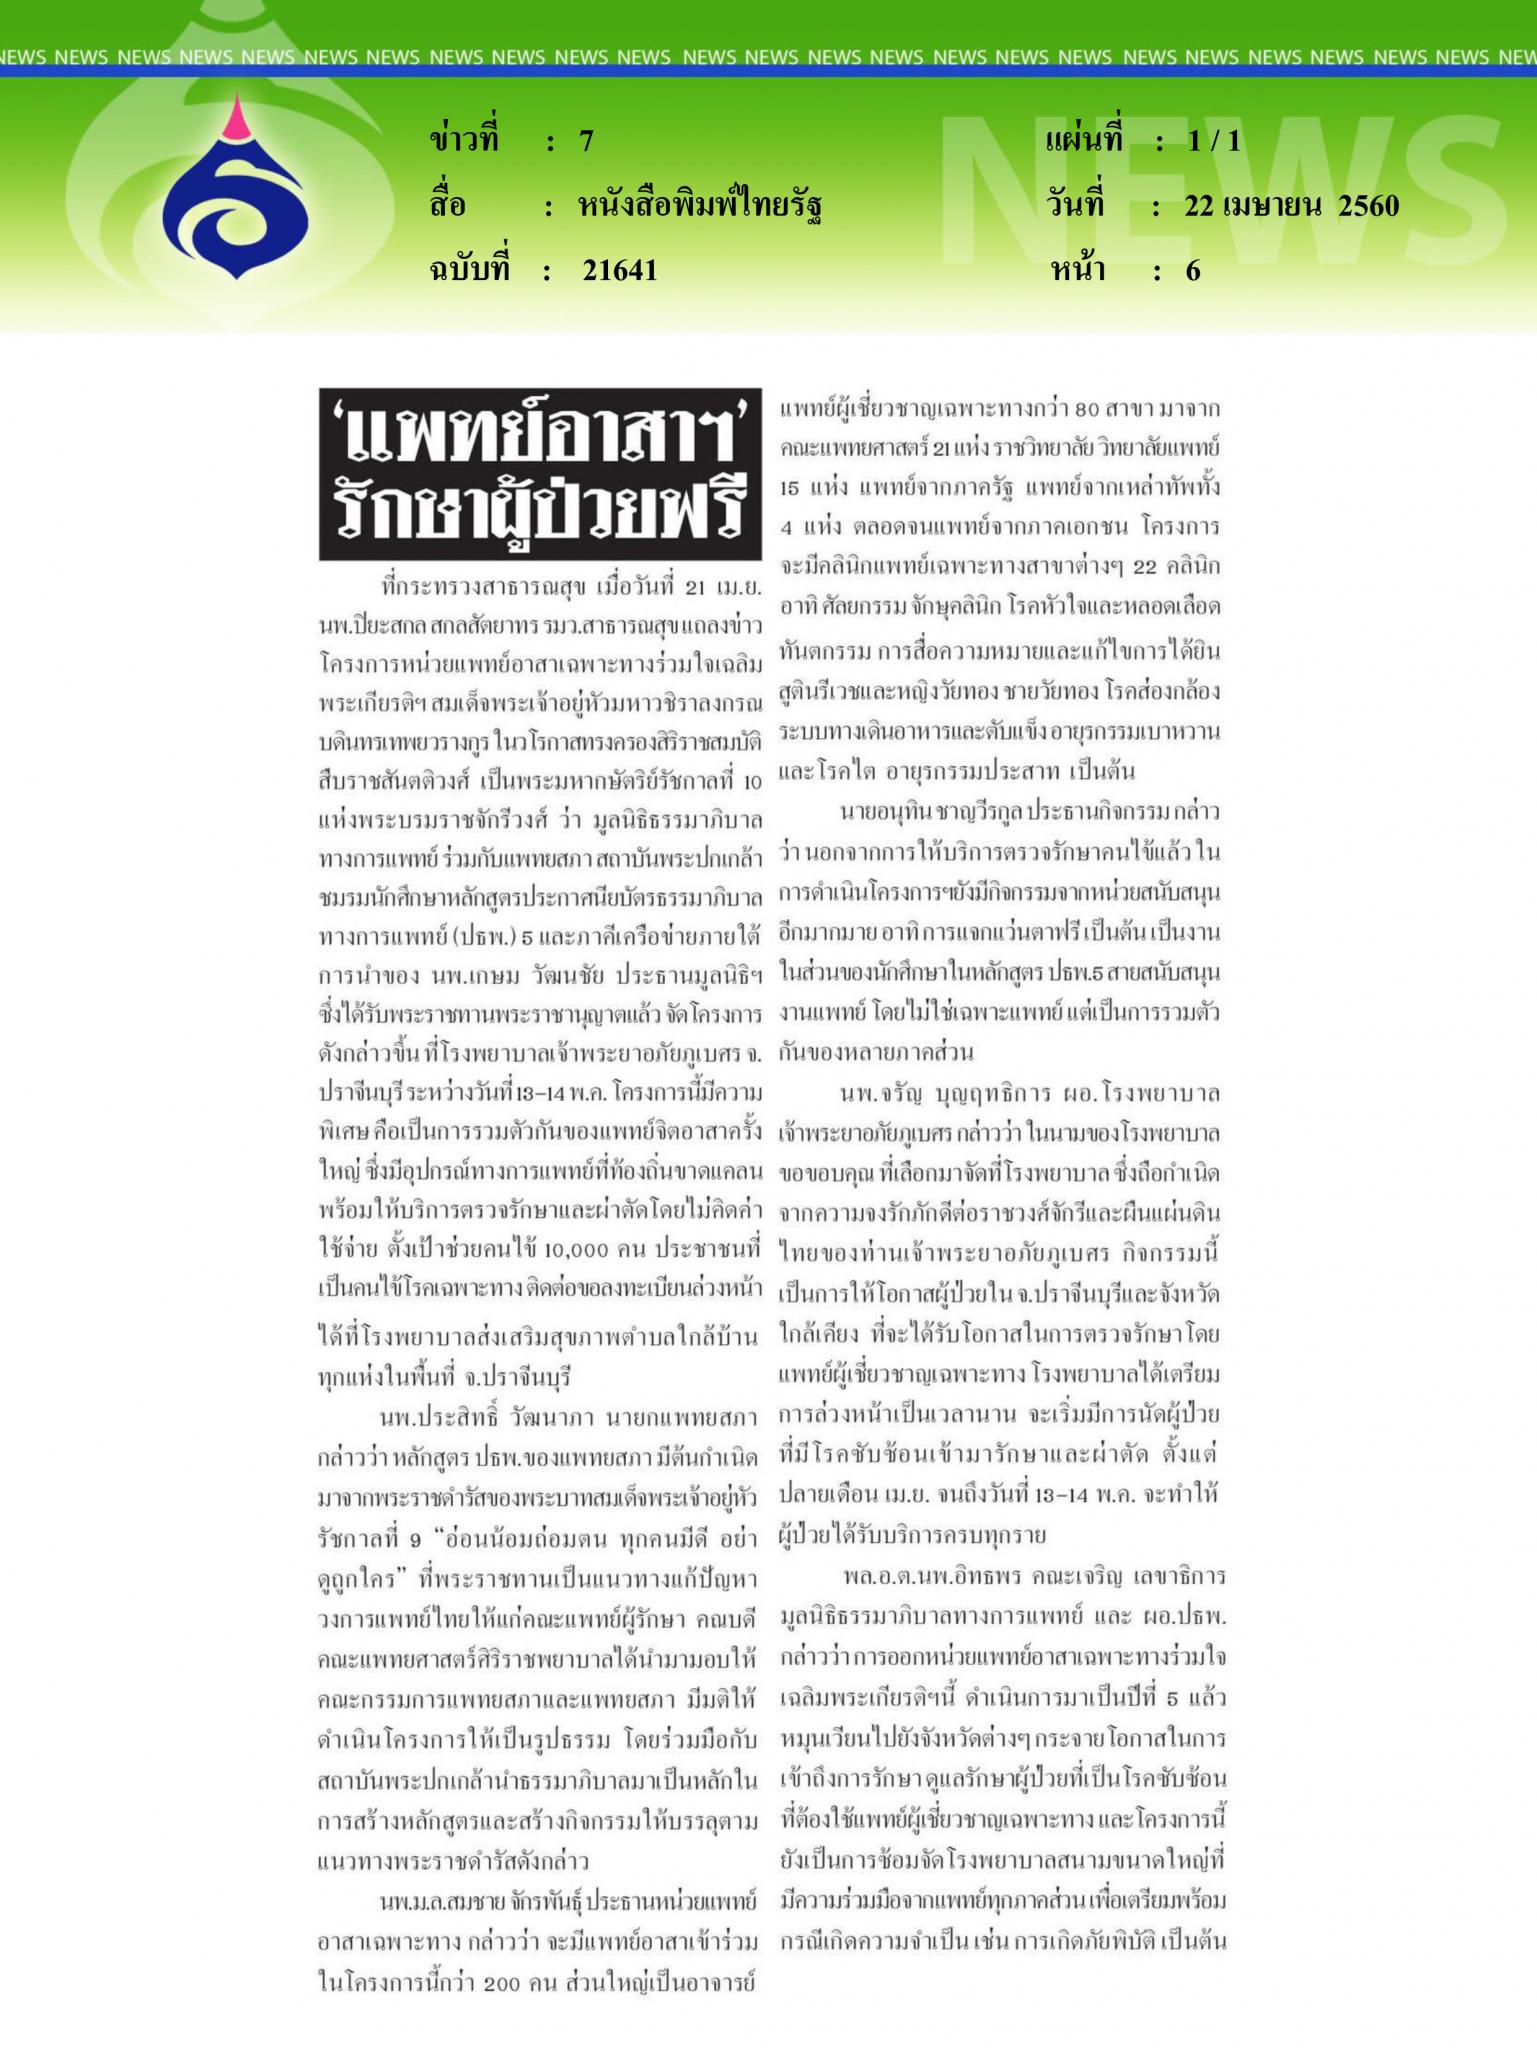 หนังสือพิมพ์ไทยรัฐ, แพทย์อาสารักษาฟรี